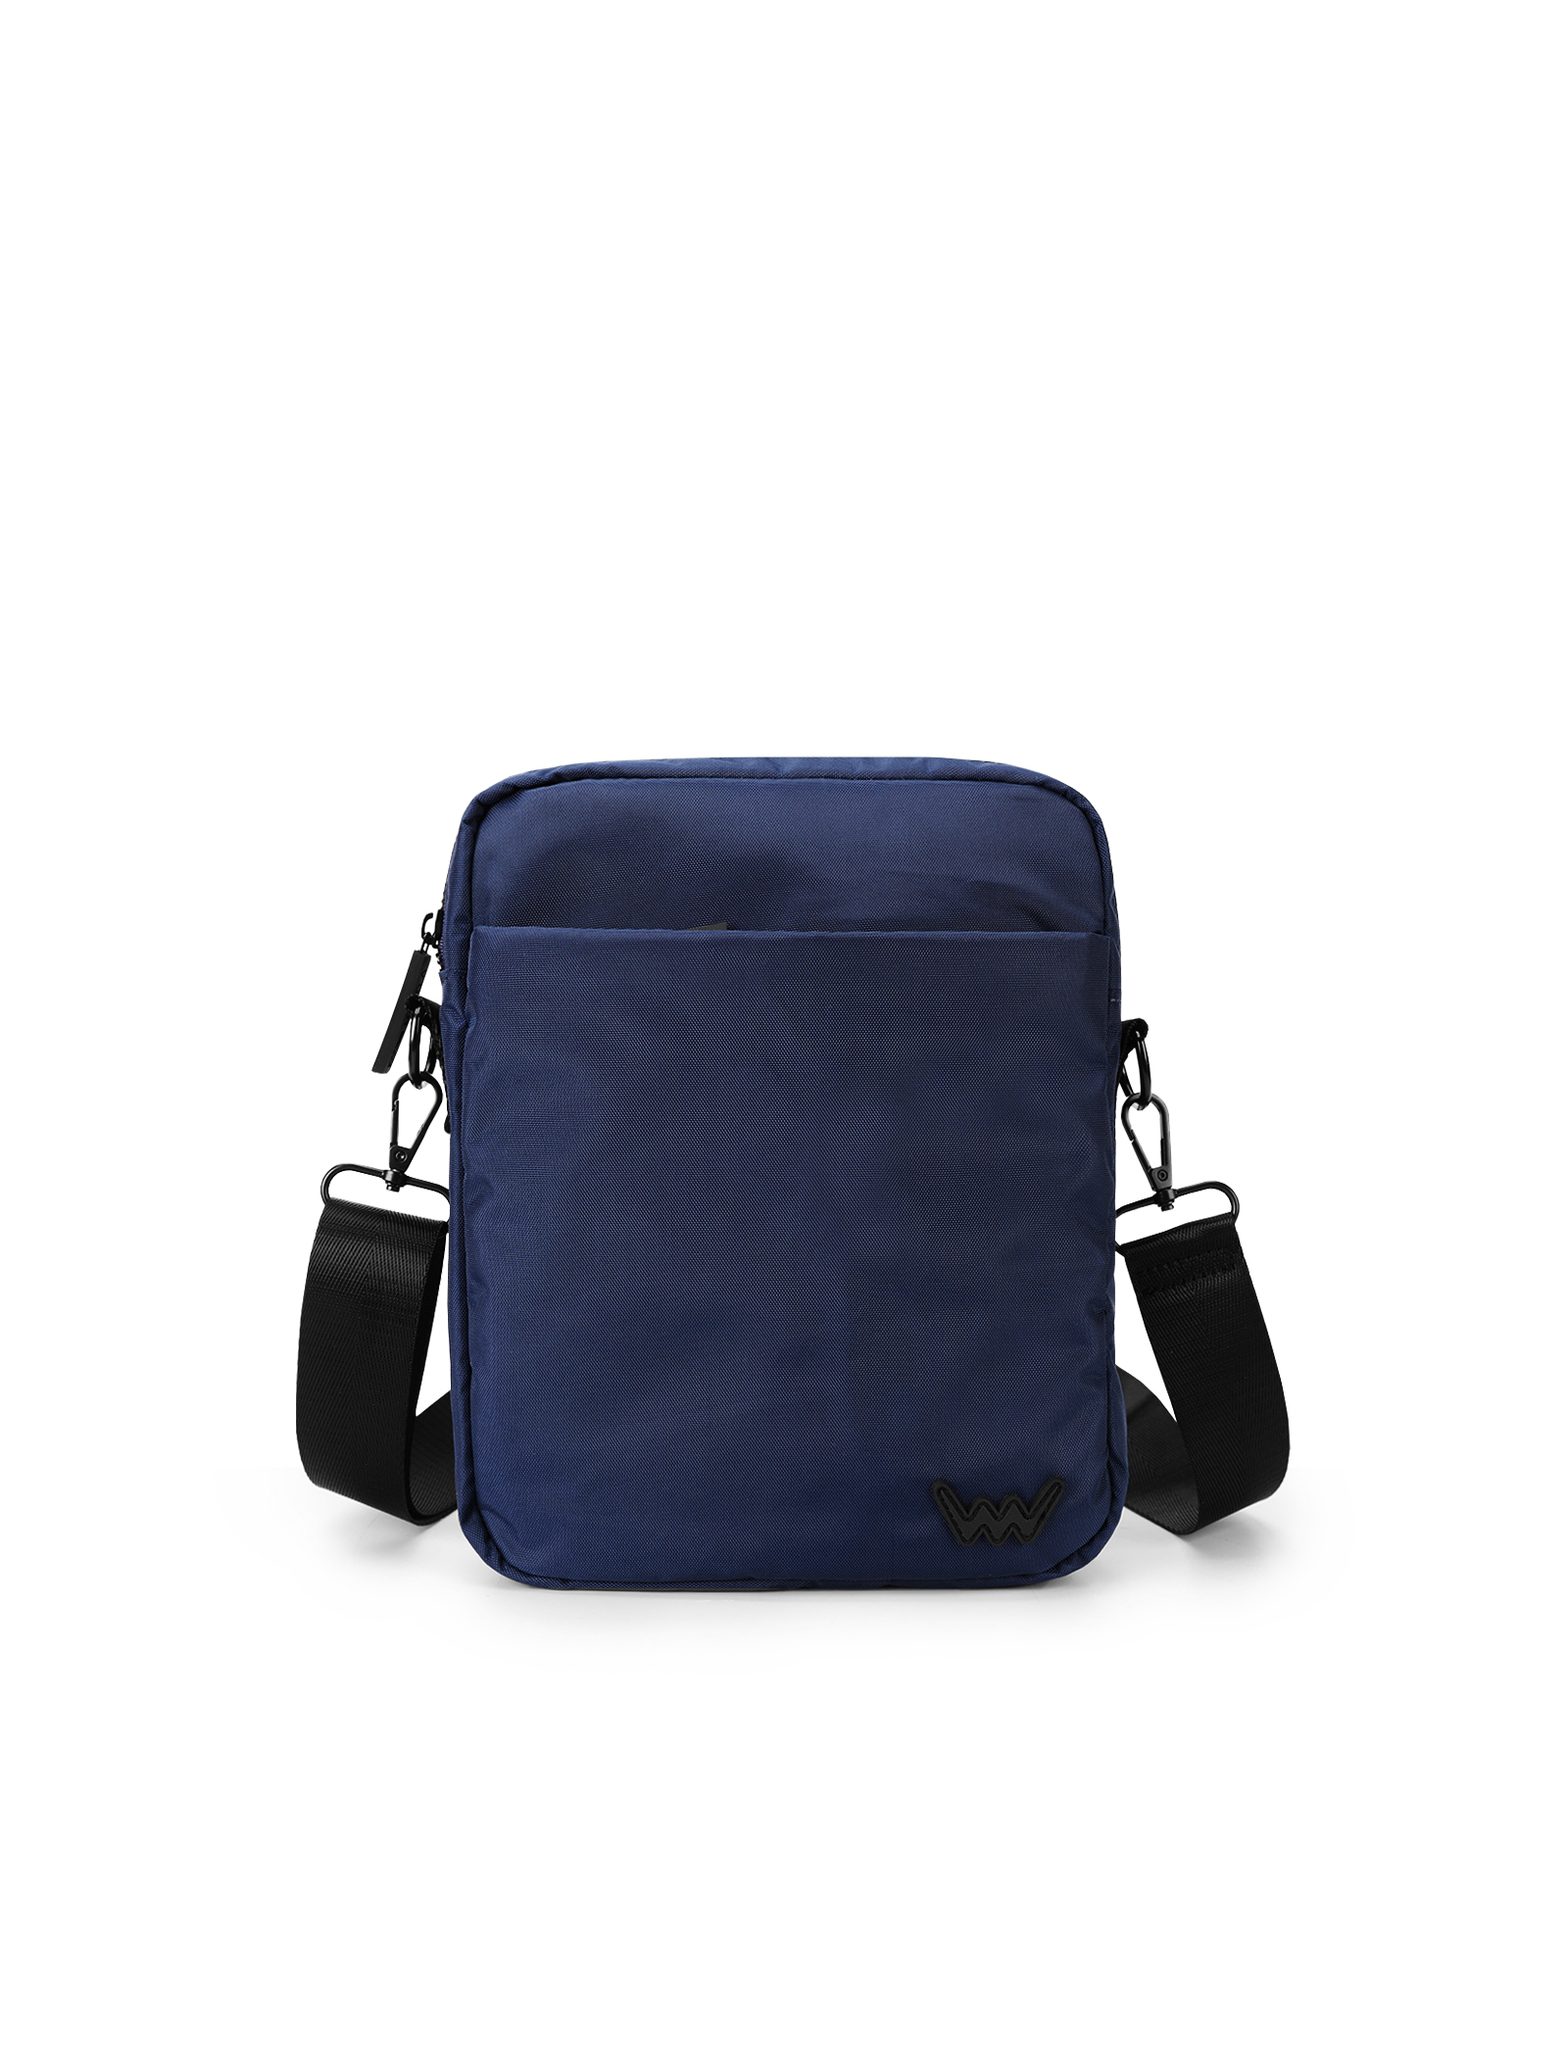 VUCH Arllo Blue Bag